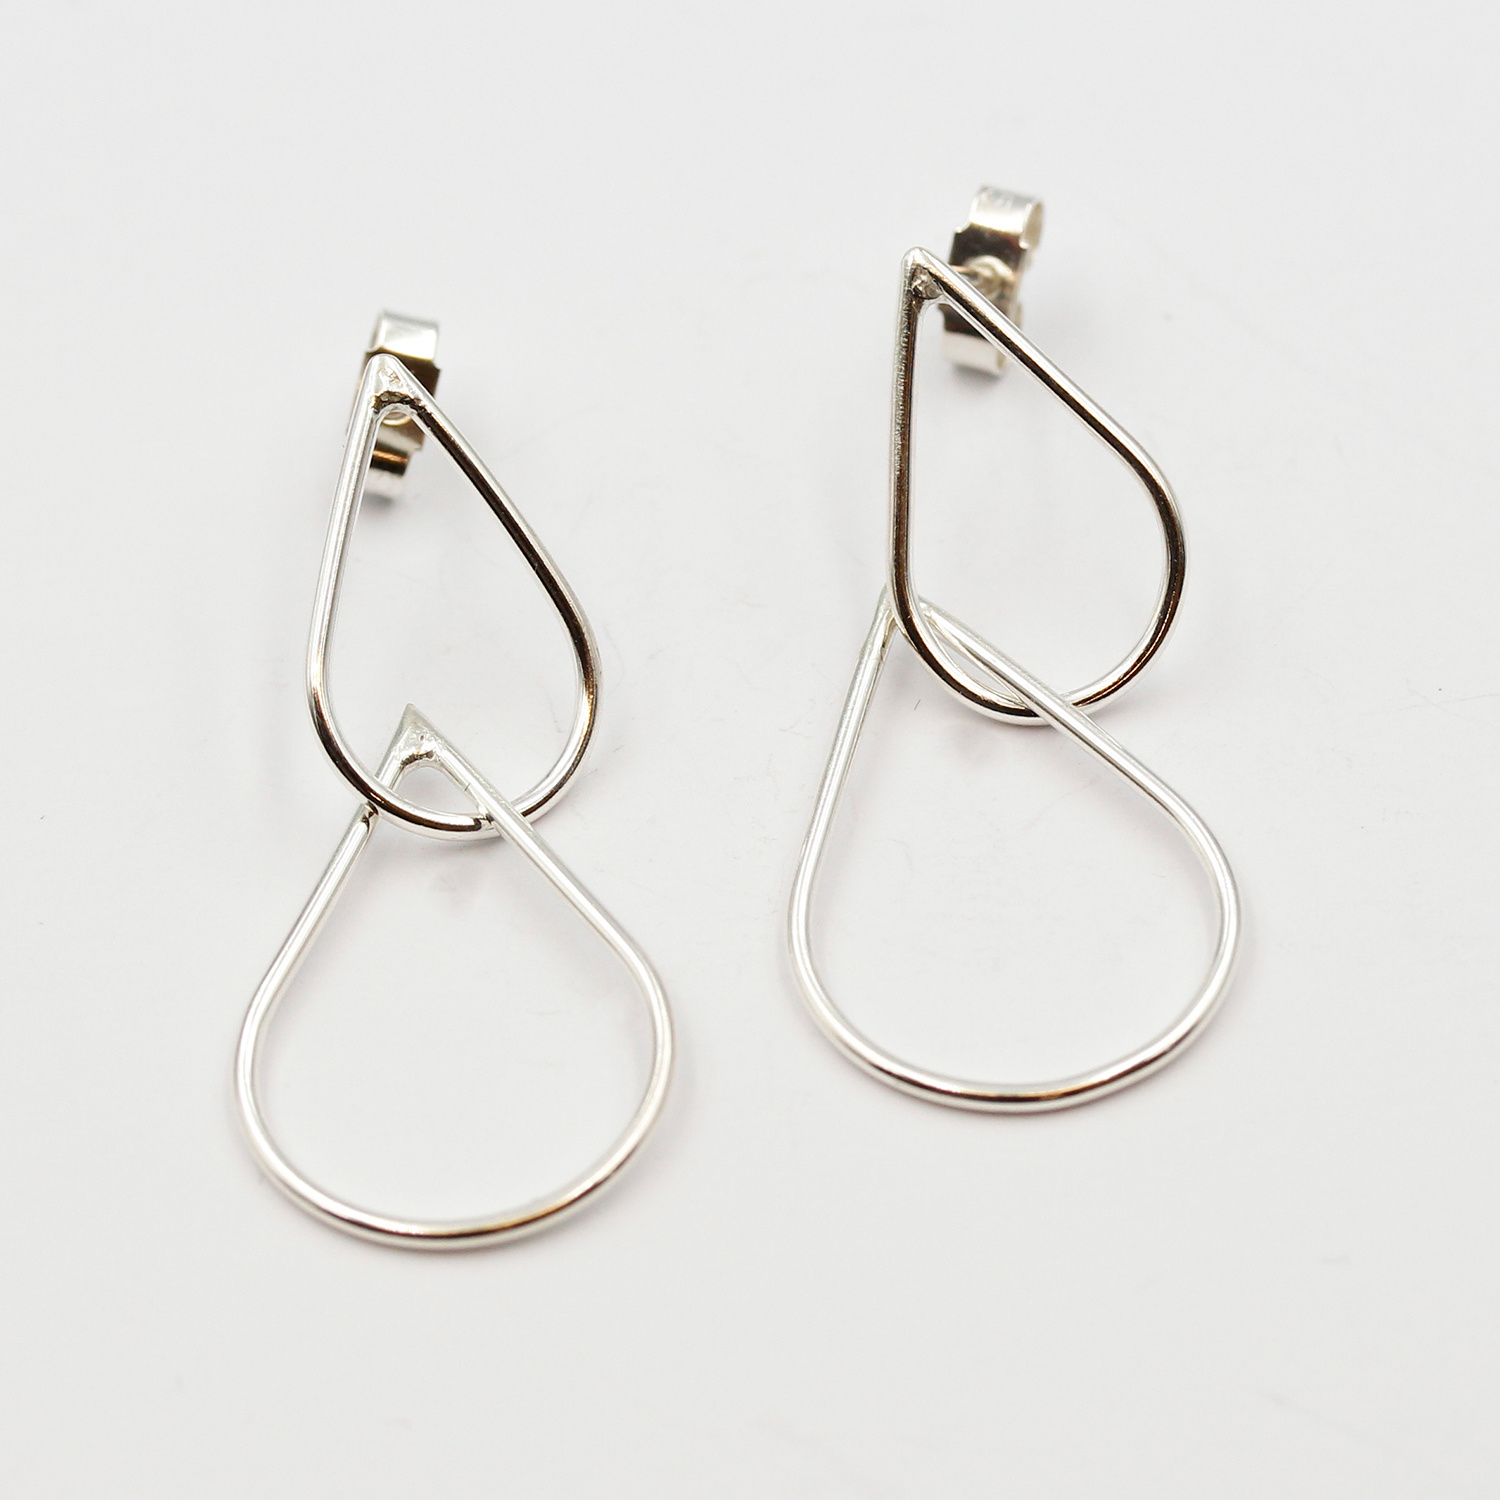 Double Teardrop Stud Earrings by Claire Lowe